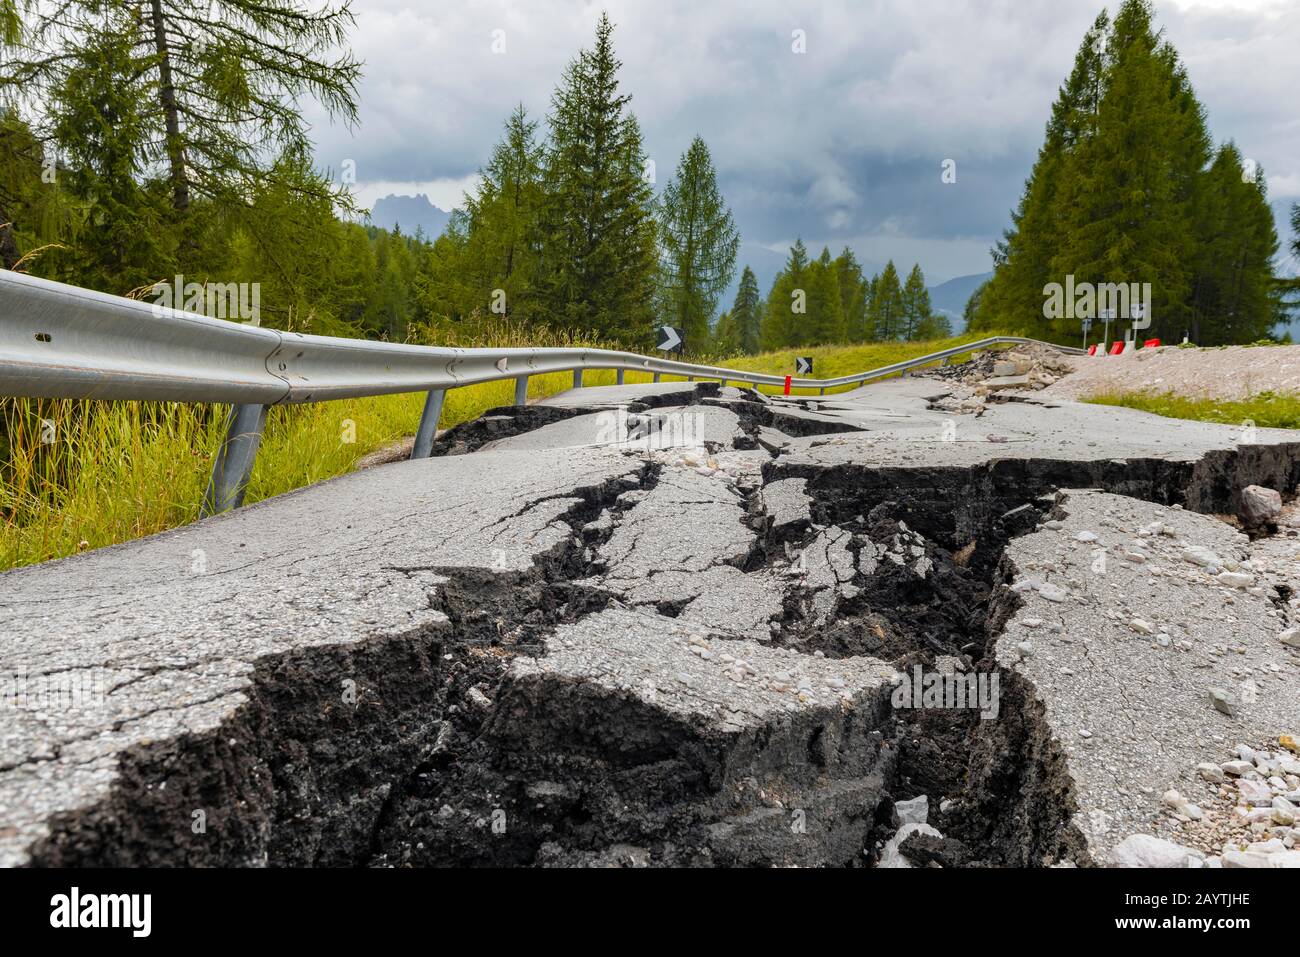 Route brisée avec des fissures dans la surface de la route, route brisée d'une route de montagne, Belluno, Italie Banque D'Images